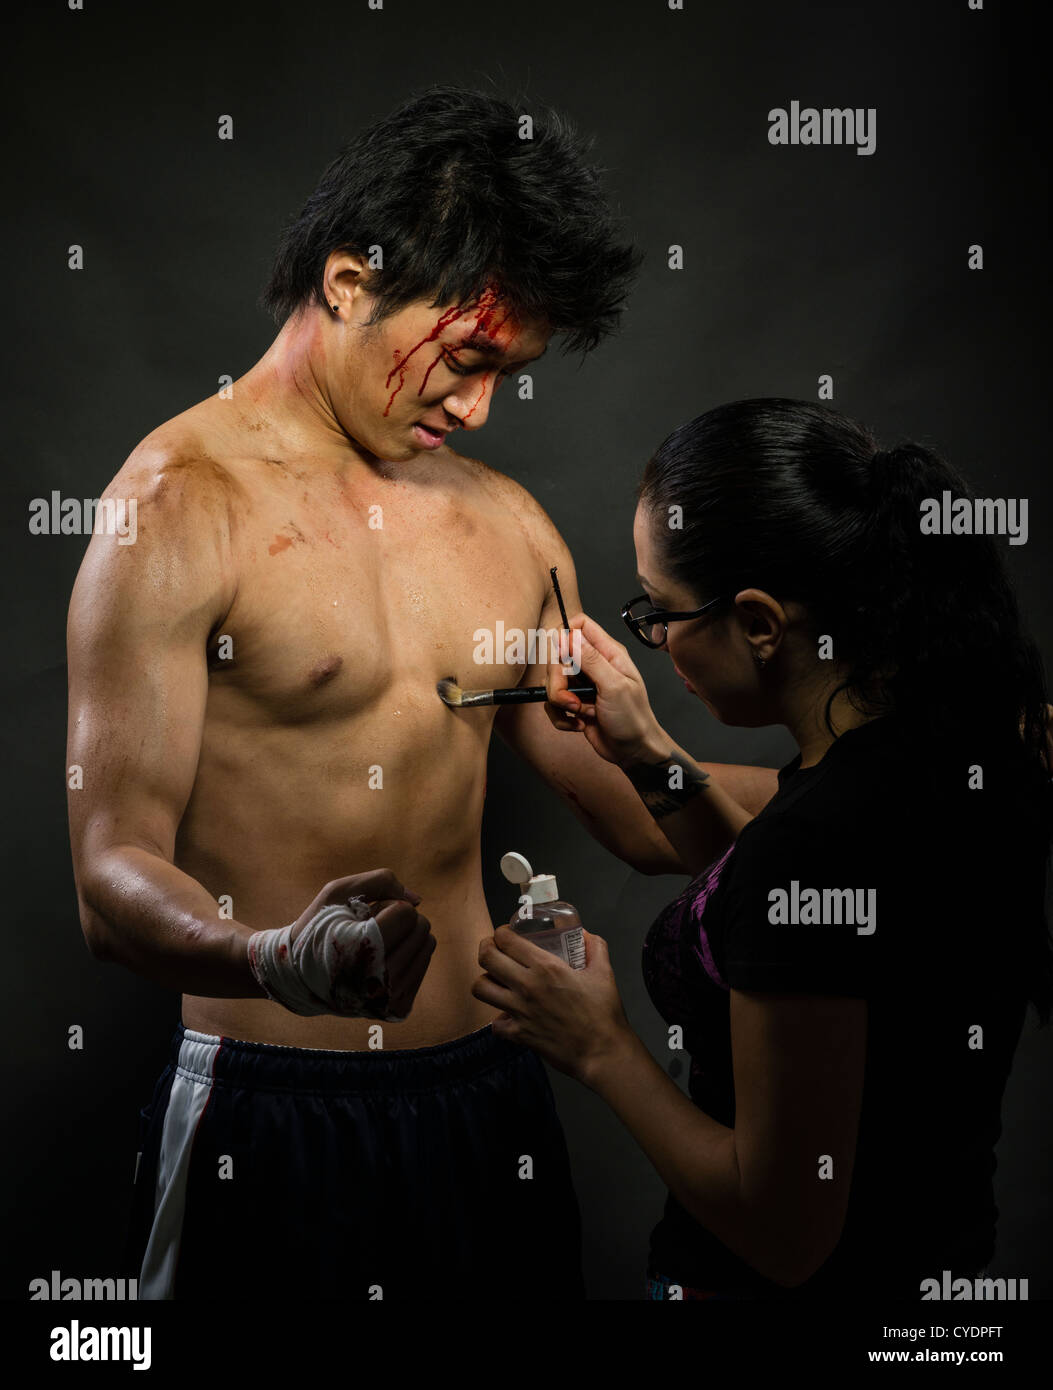 Efectos especiales de maquillaje / artista aplica la suciedad y la sangre al cuerpo de un modelo / Actor Foto de stock